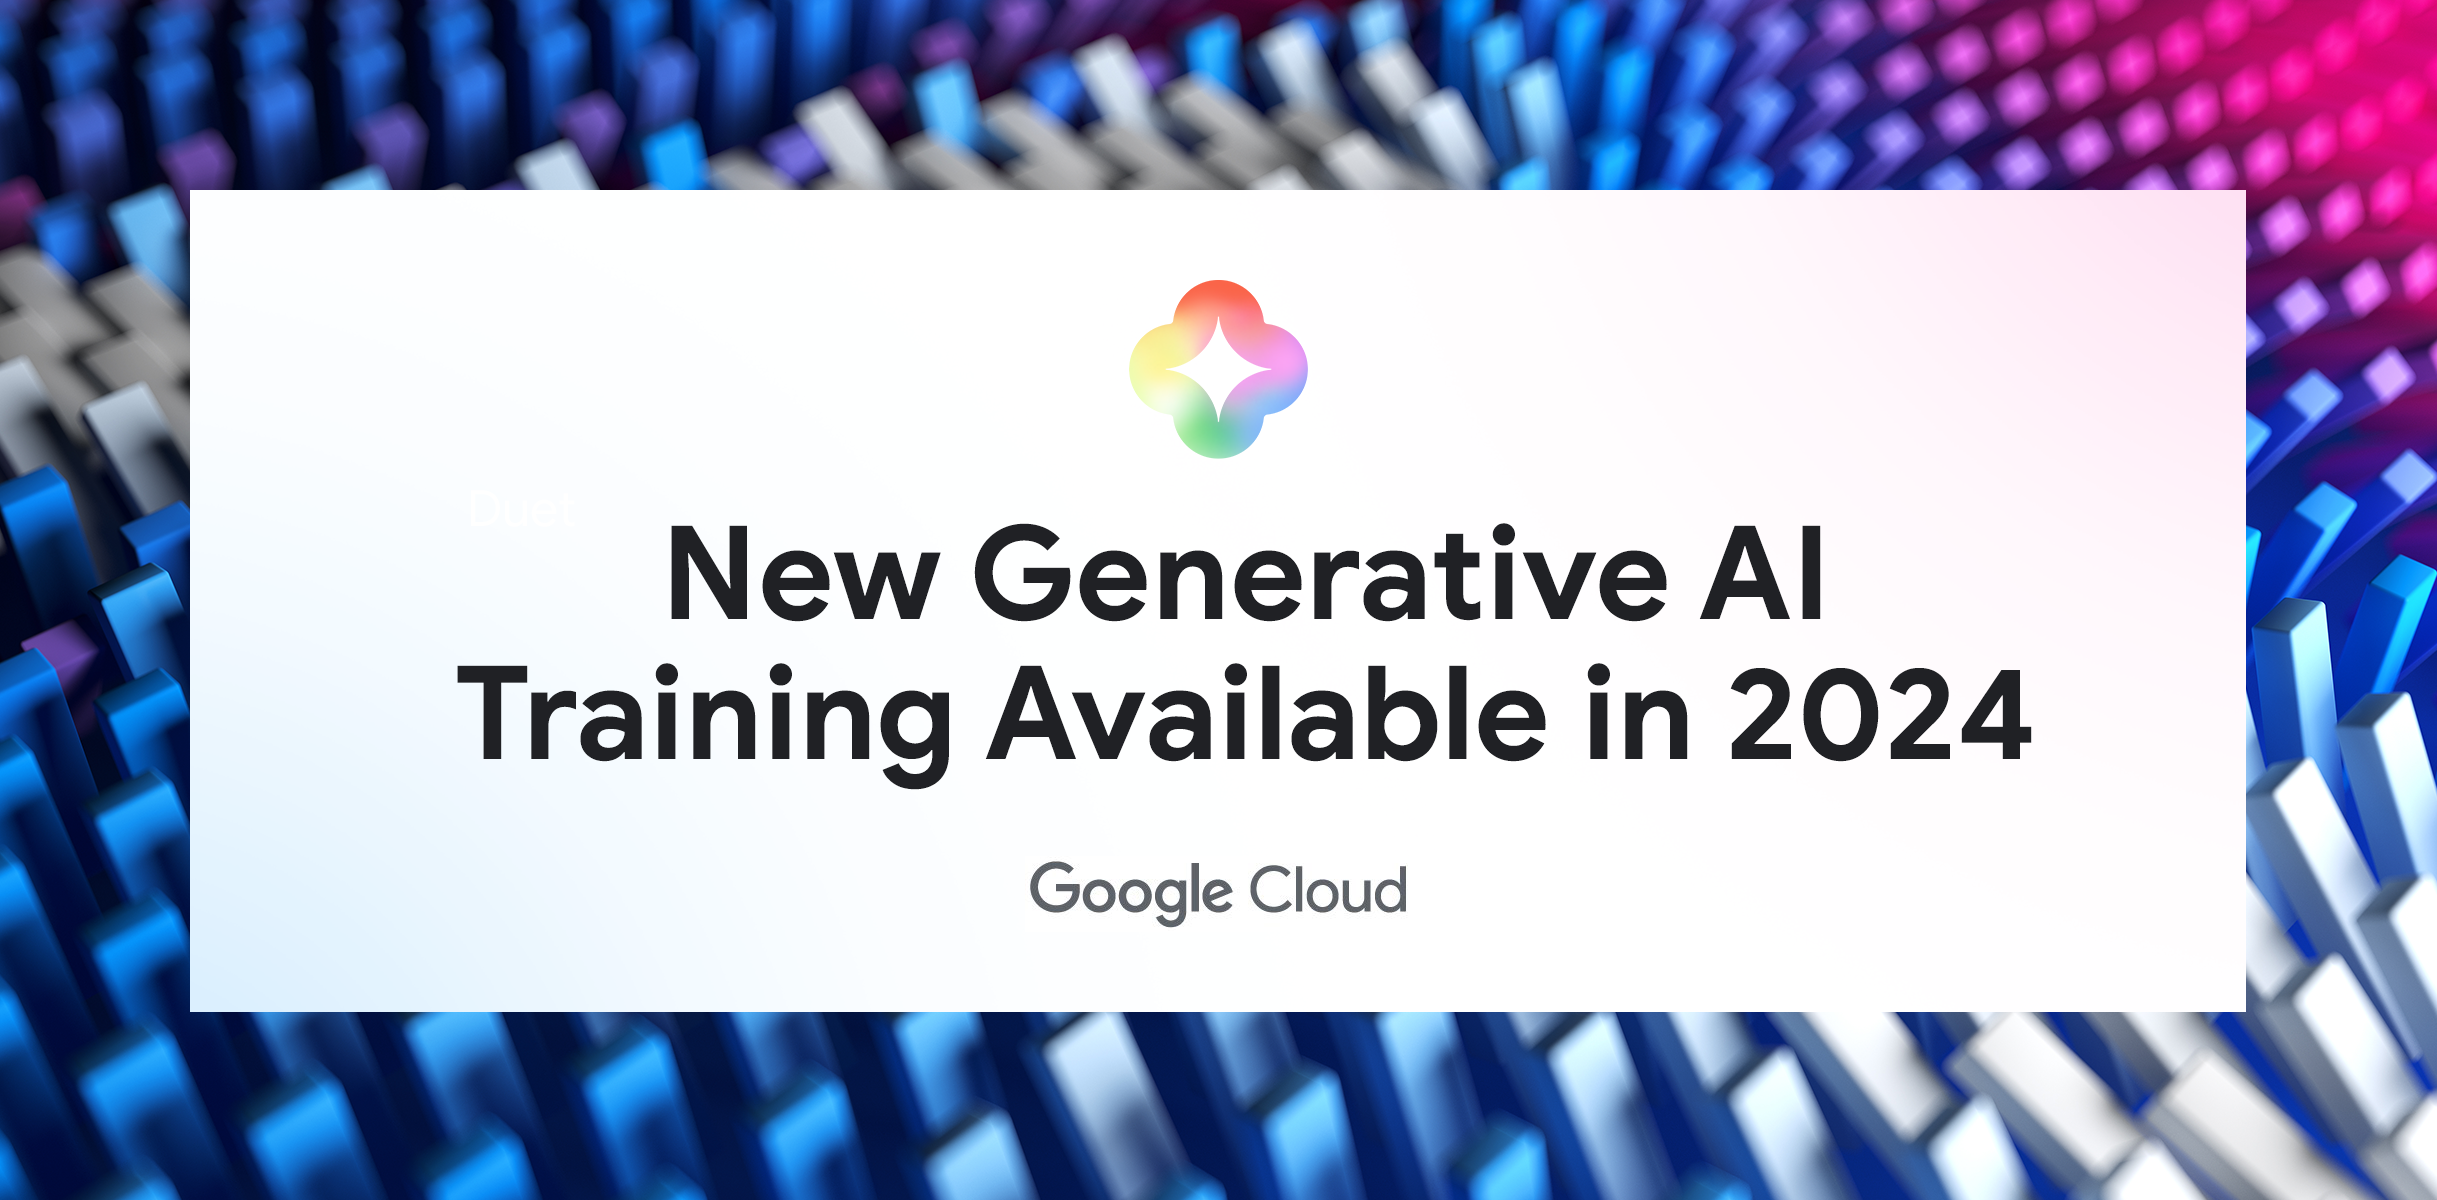 一条彩色横幅，中间有文本：“2024 年推出全新的生成式 AI 培训”，以及生成式 AI 和 Google Cloud 徽标。